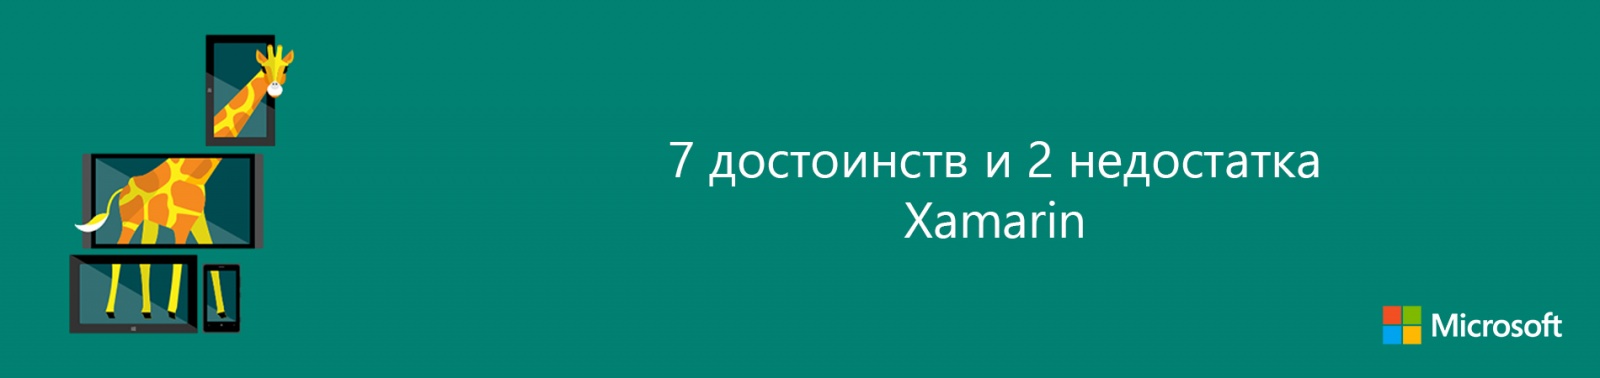 7 достоинств и 2 недостатка Xamarin - 1